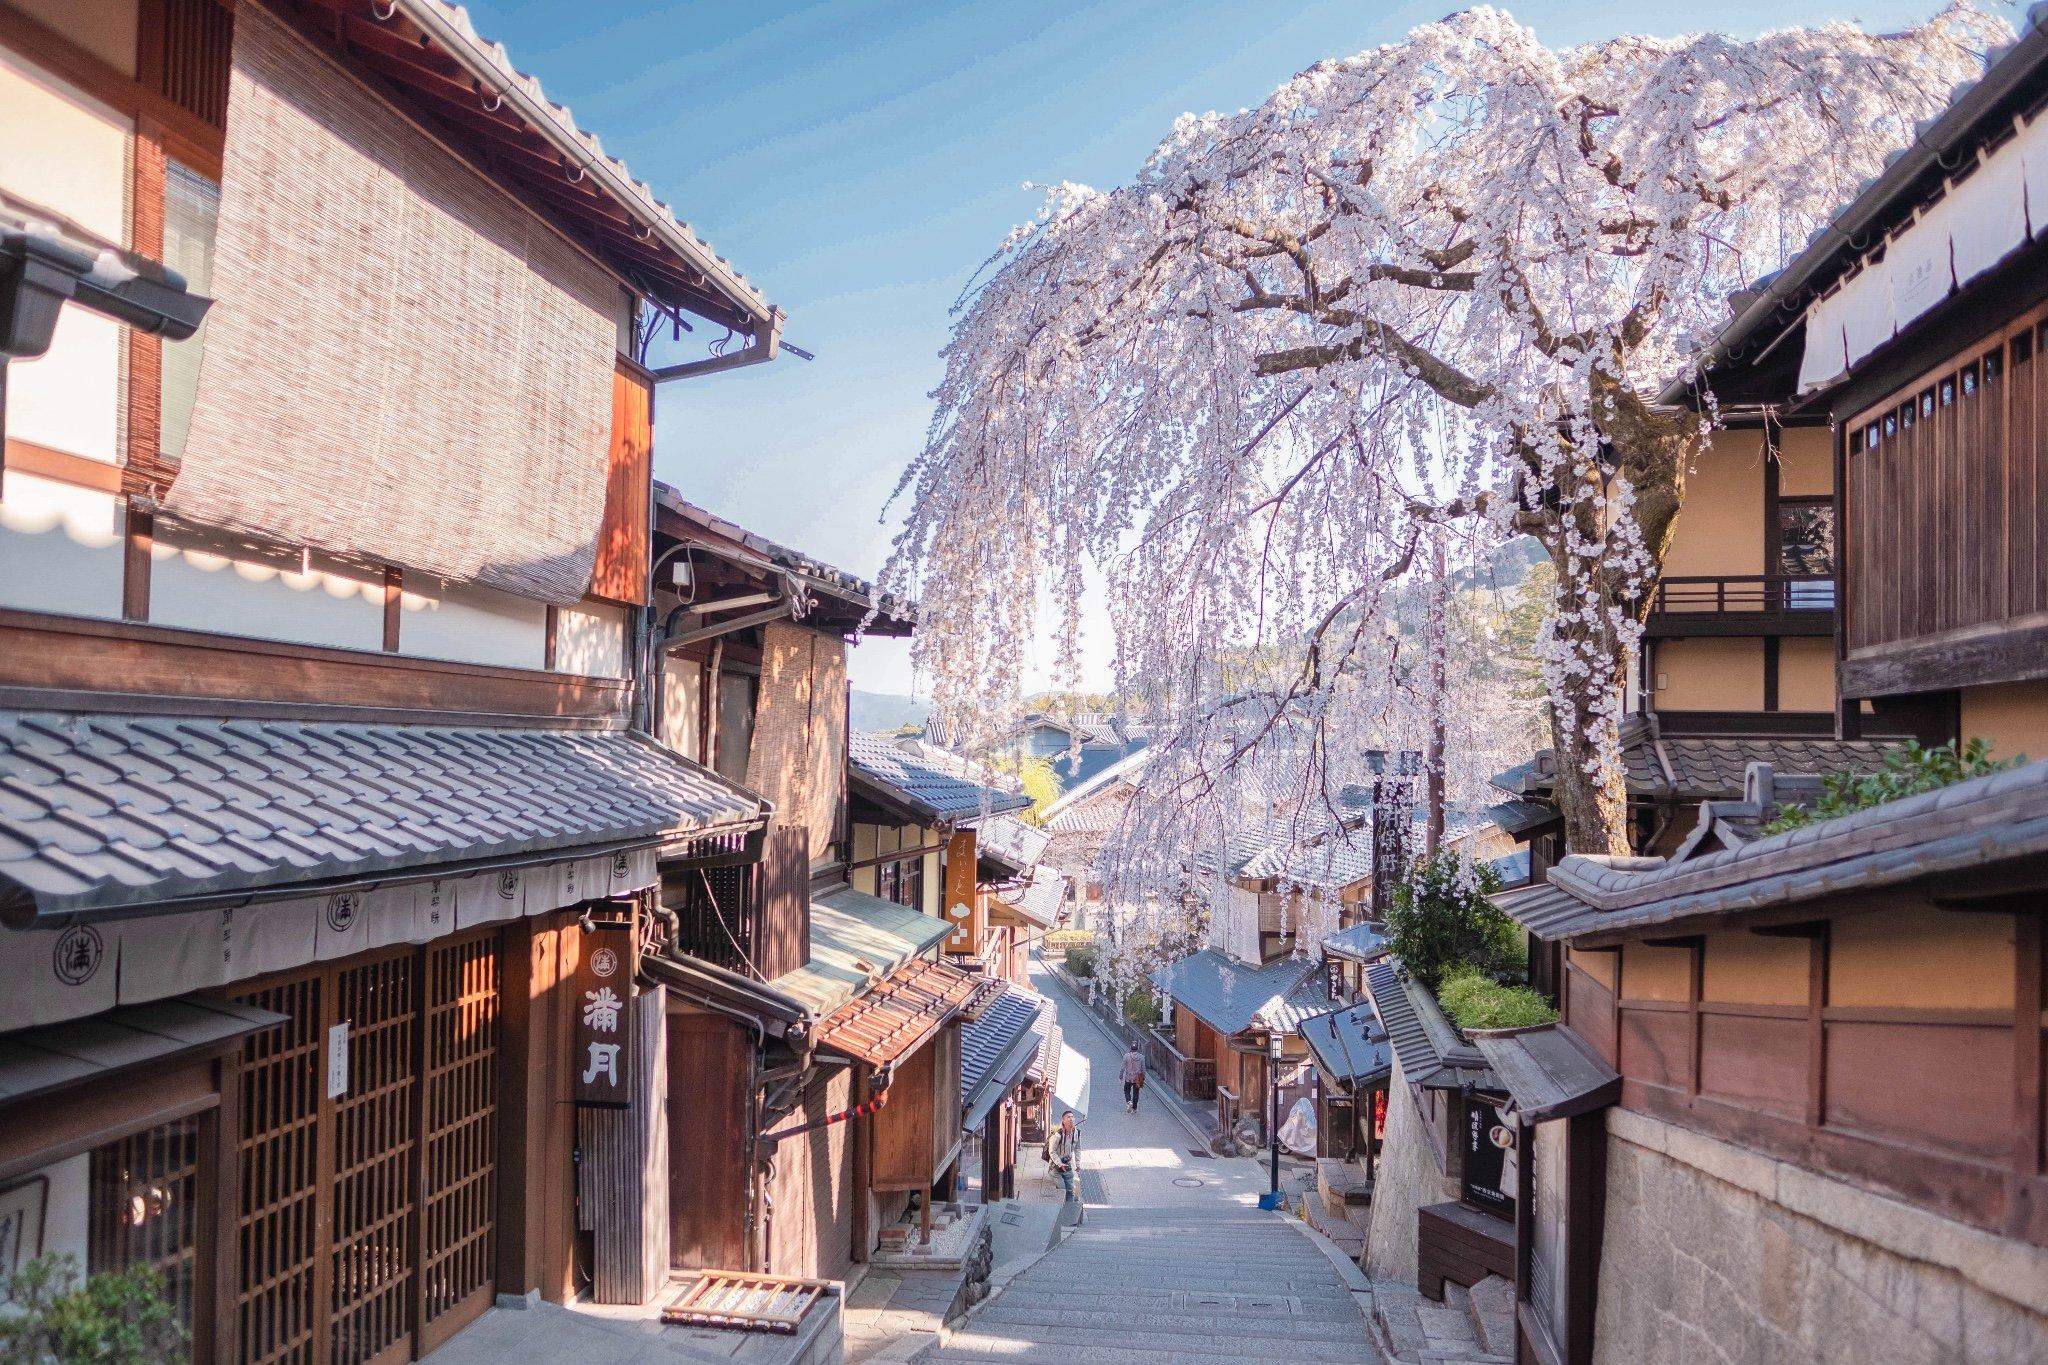 Hãy chiêm ngưỡng hình ảnh tuyệt đẹp về hoa anh đào Kyoto, biểu tượng của sự tinh khiết và nổi tiếng trên khắp thế giới. Đây là cơ hội để bạn mơ mộng và thưởng thức vẻ đẹp thần tiên của cảnh quan Nhật Bản. Hãy yêu cuộc sống và trân trọng những khoảnh khắc này.